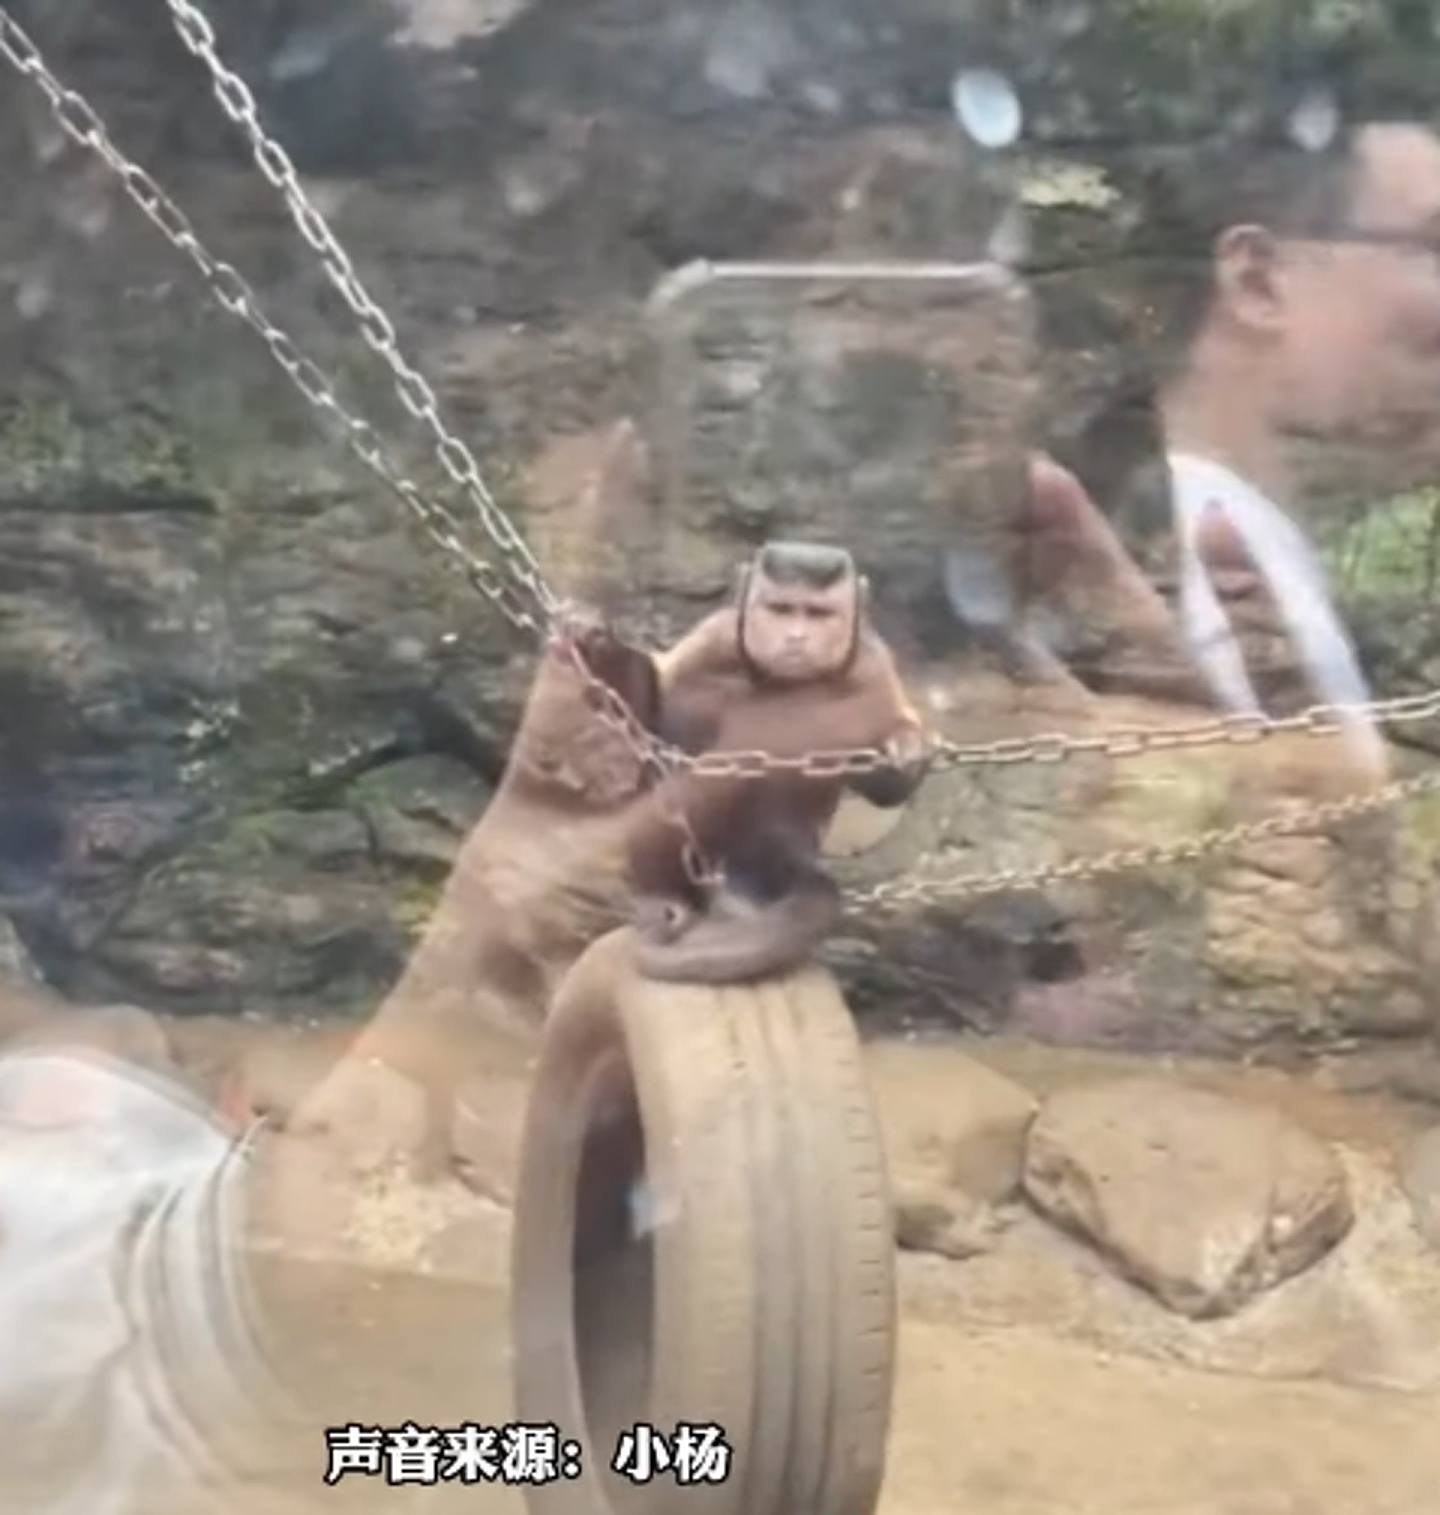 有游客在动物园看到一只「国字脸秃头猴子」。 （影片截图）